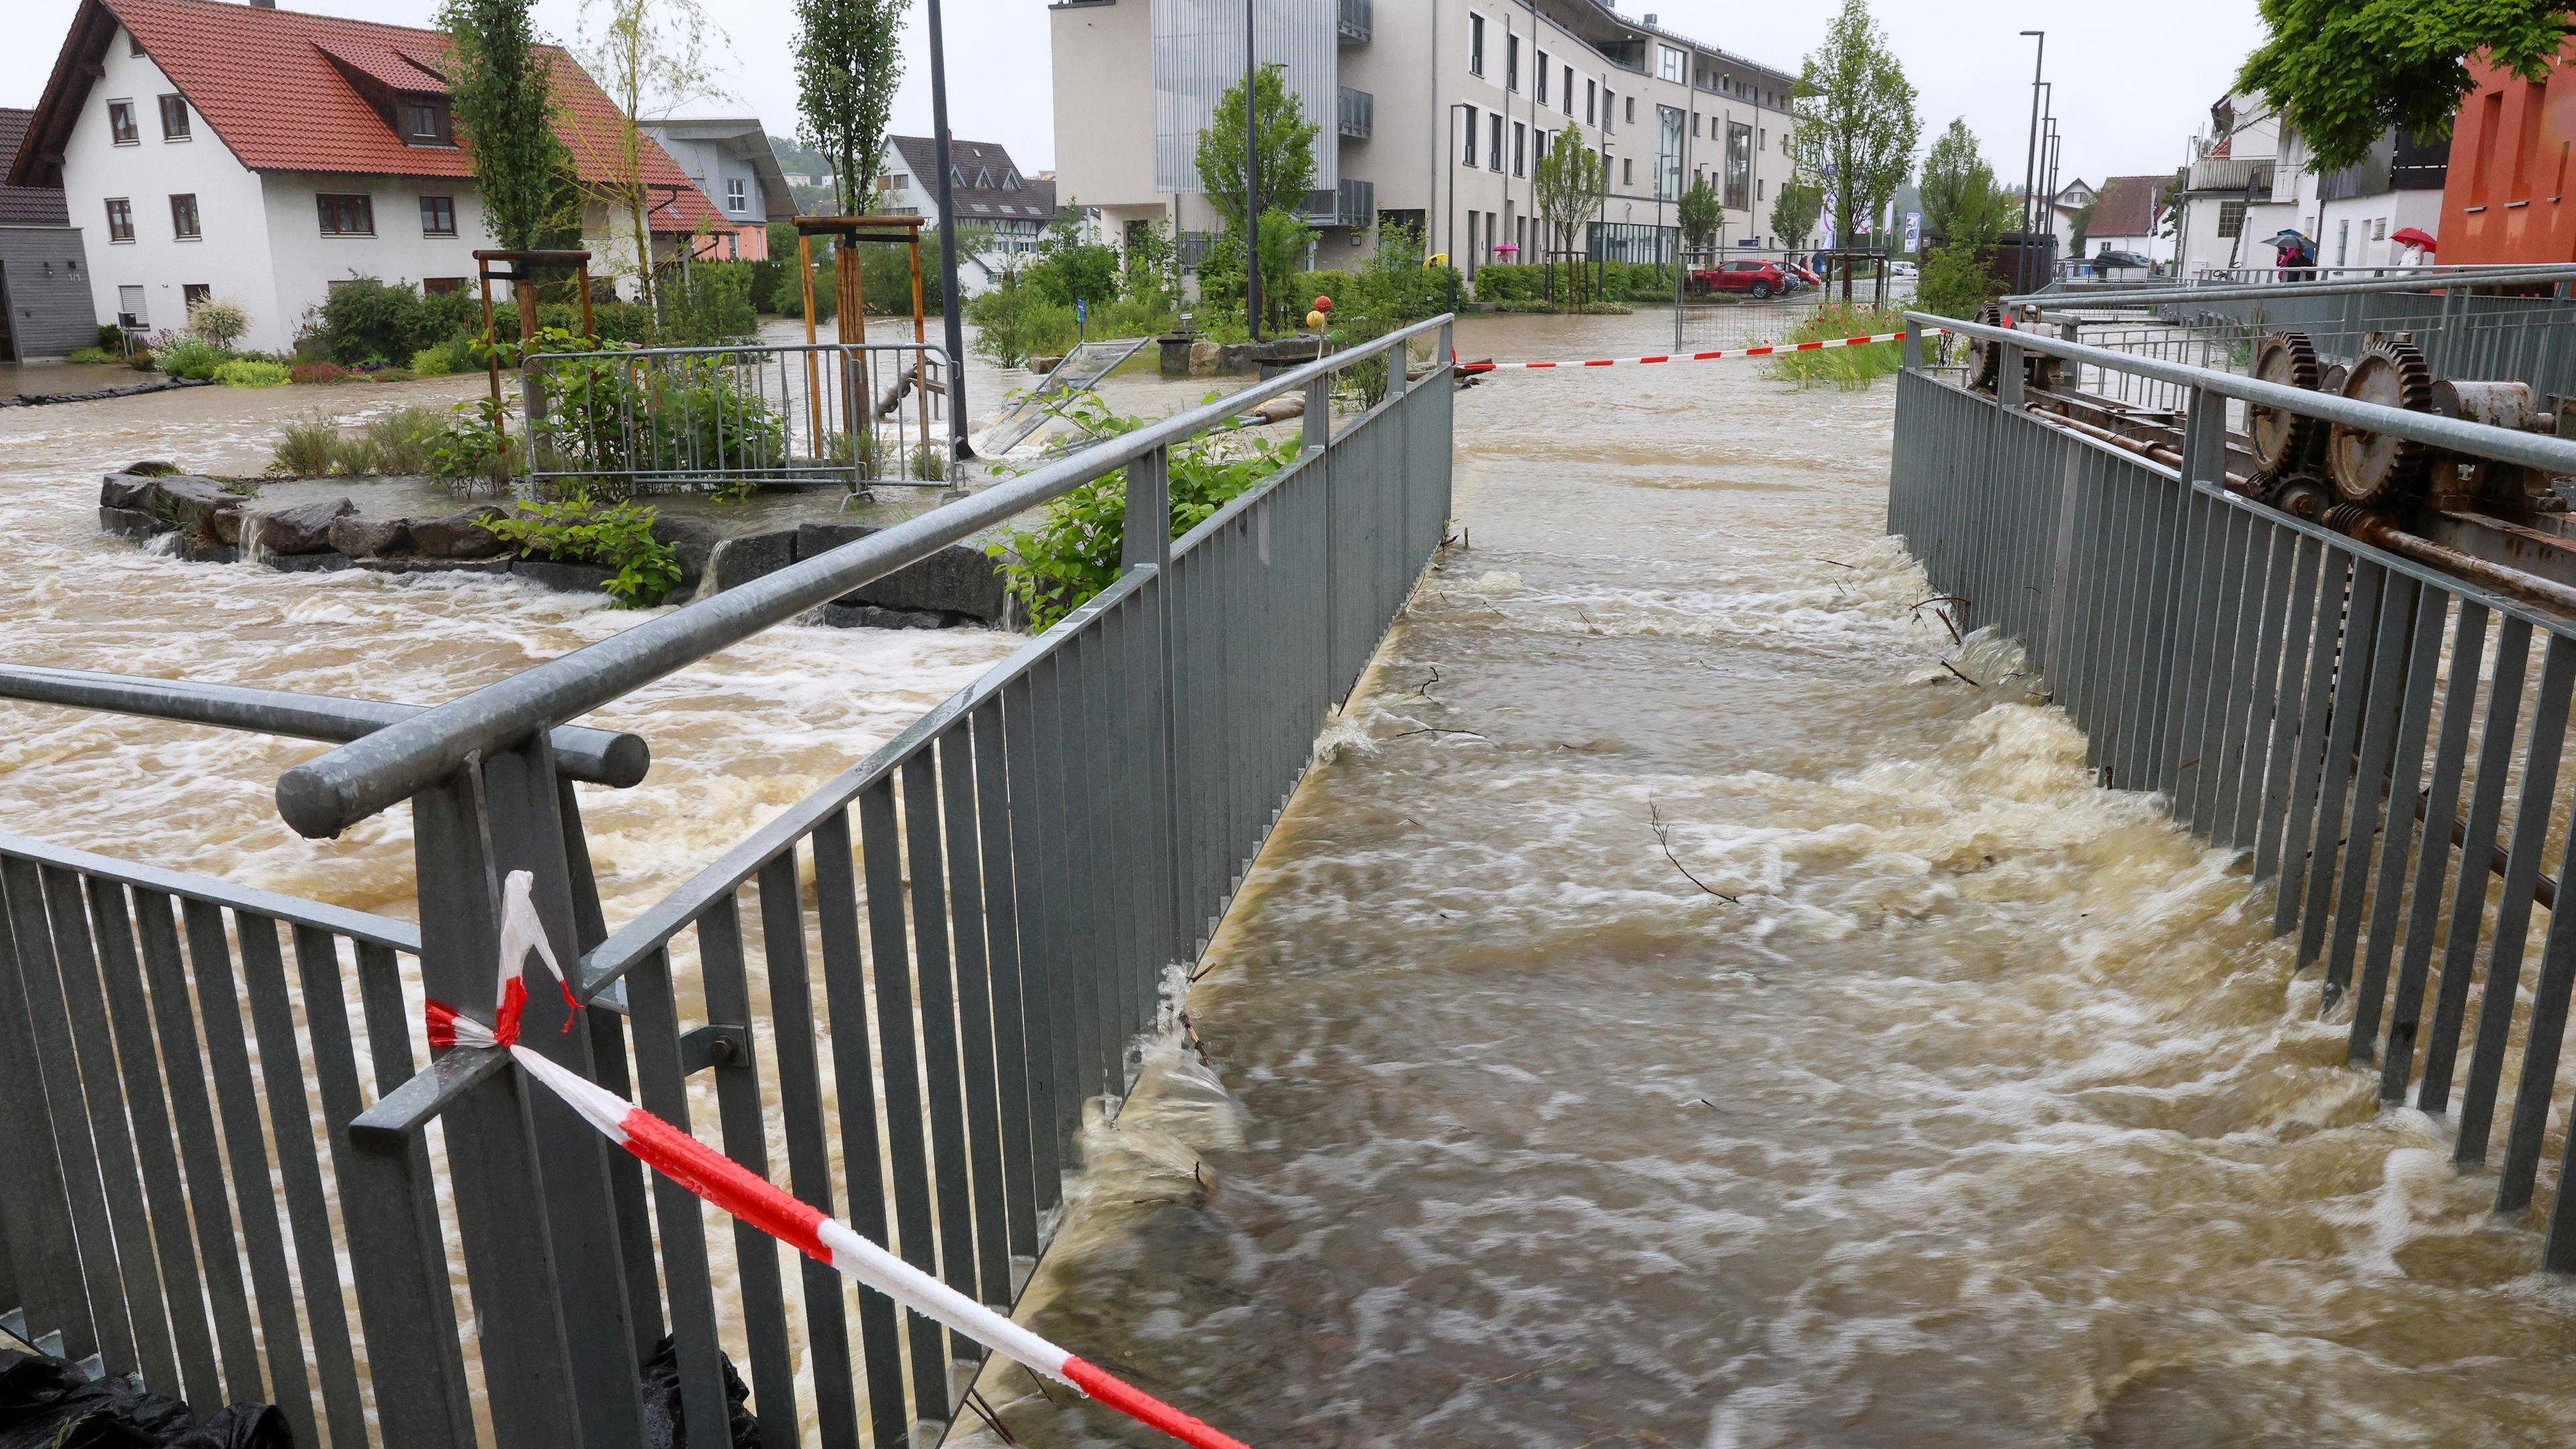 Absperrbänder sind an einer Fußgängerbrücke in der Innenstadt von Ochsenhausen angebracht. Der Fluss Rottum ist dort über die Ufer getreten.